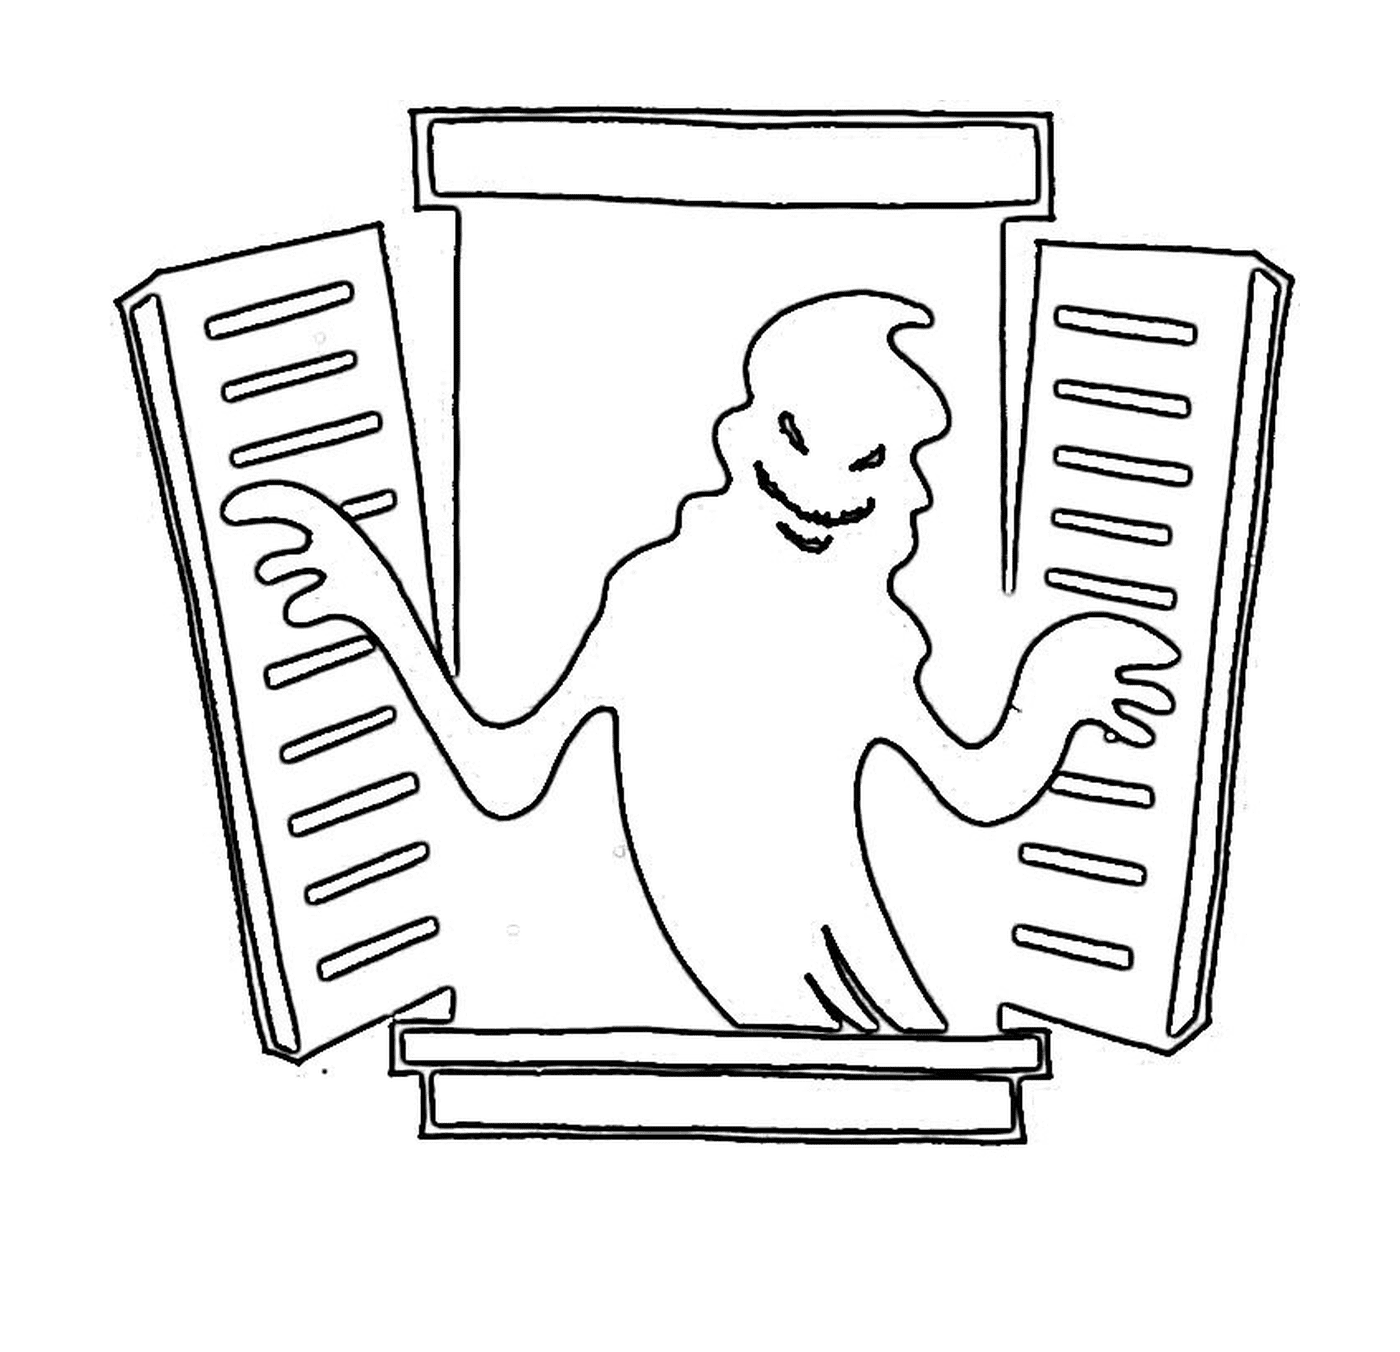   Fantôme sortant d'une fenêtre 